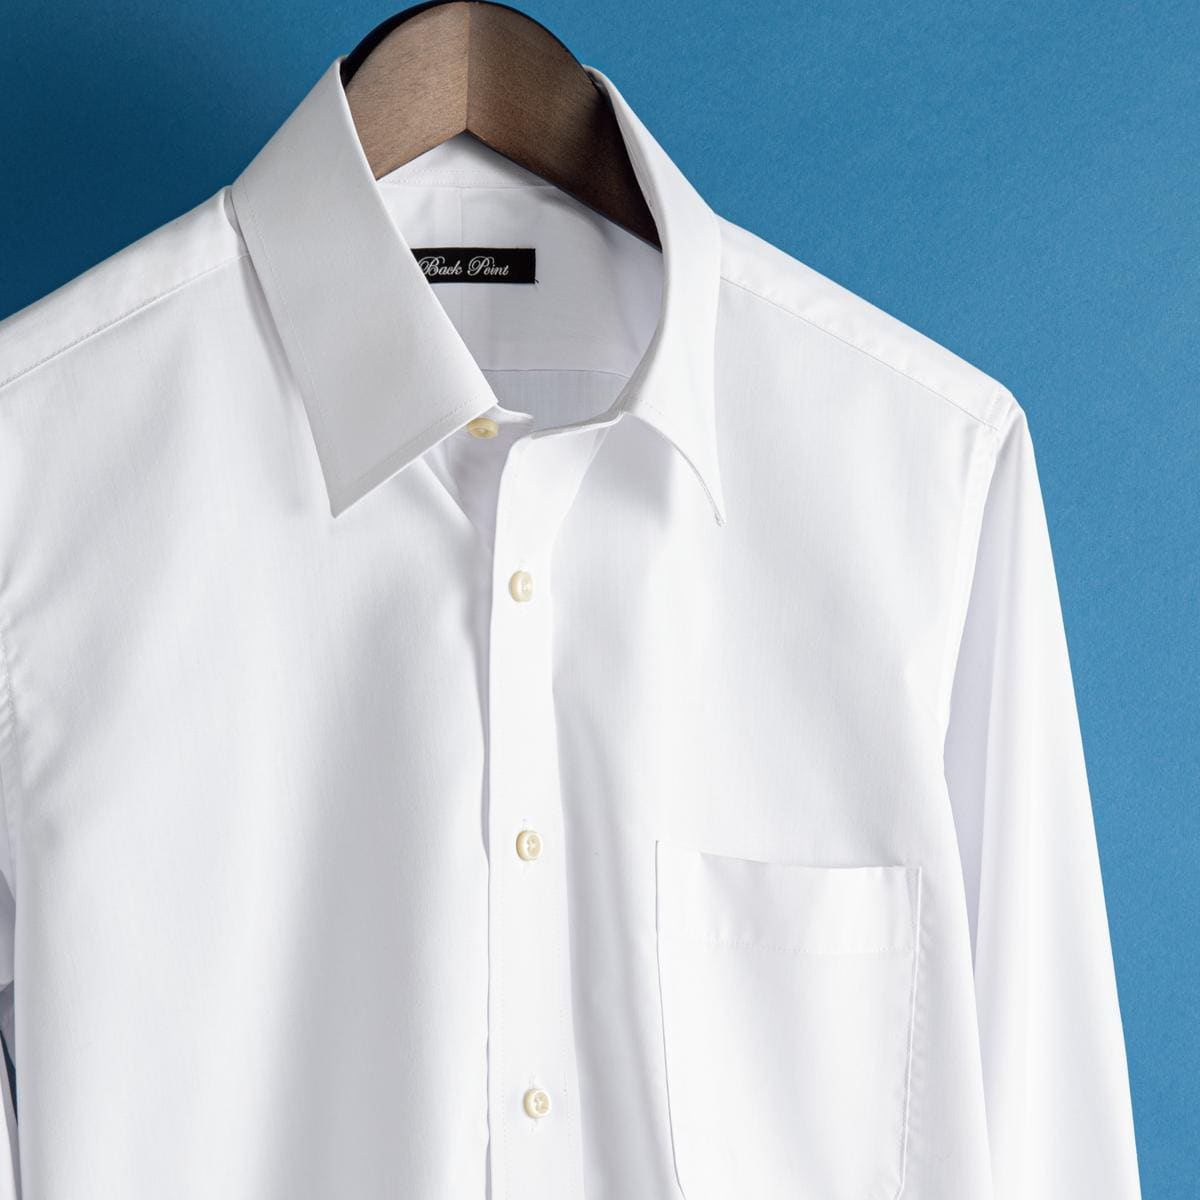 形態安定メンズビジネス白Yシャツ長袖/抗菌防臭・防汚加工